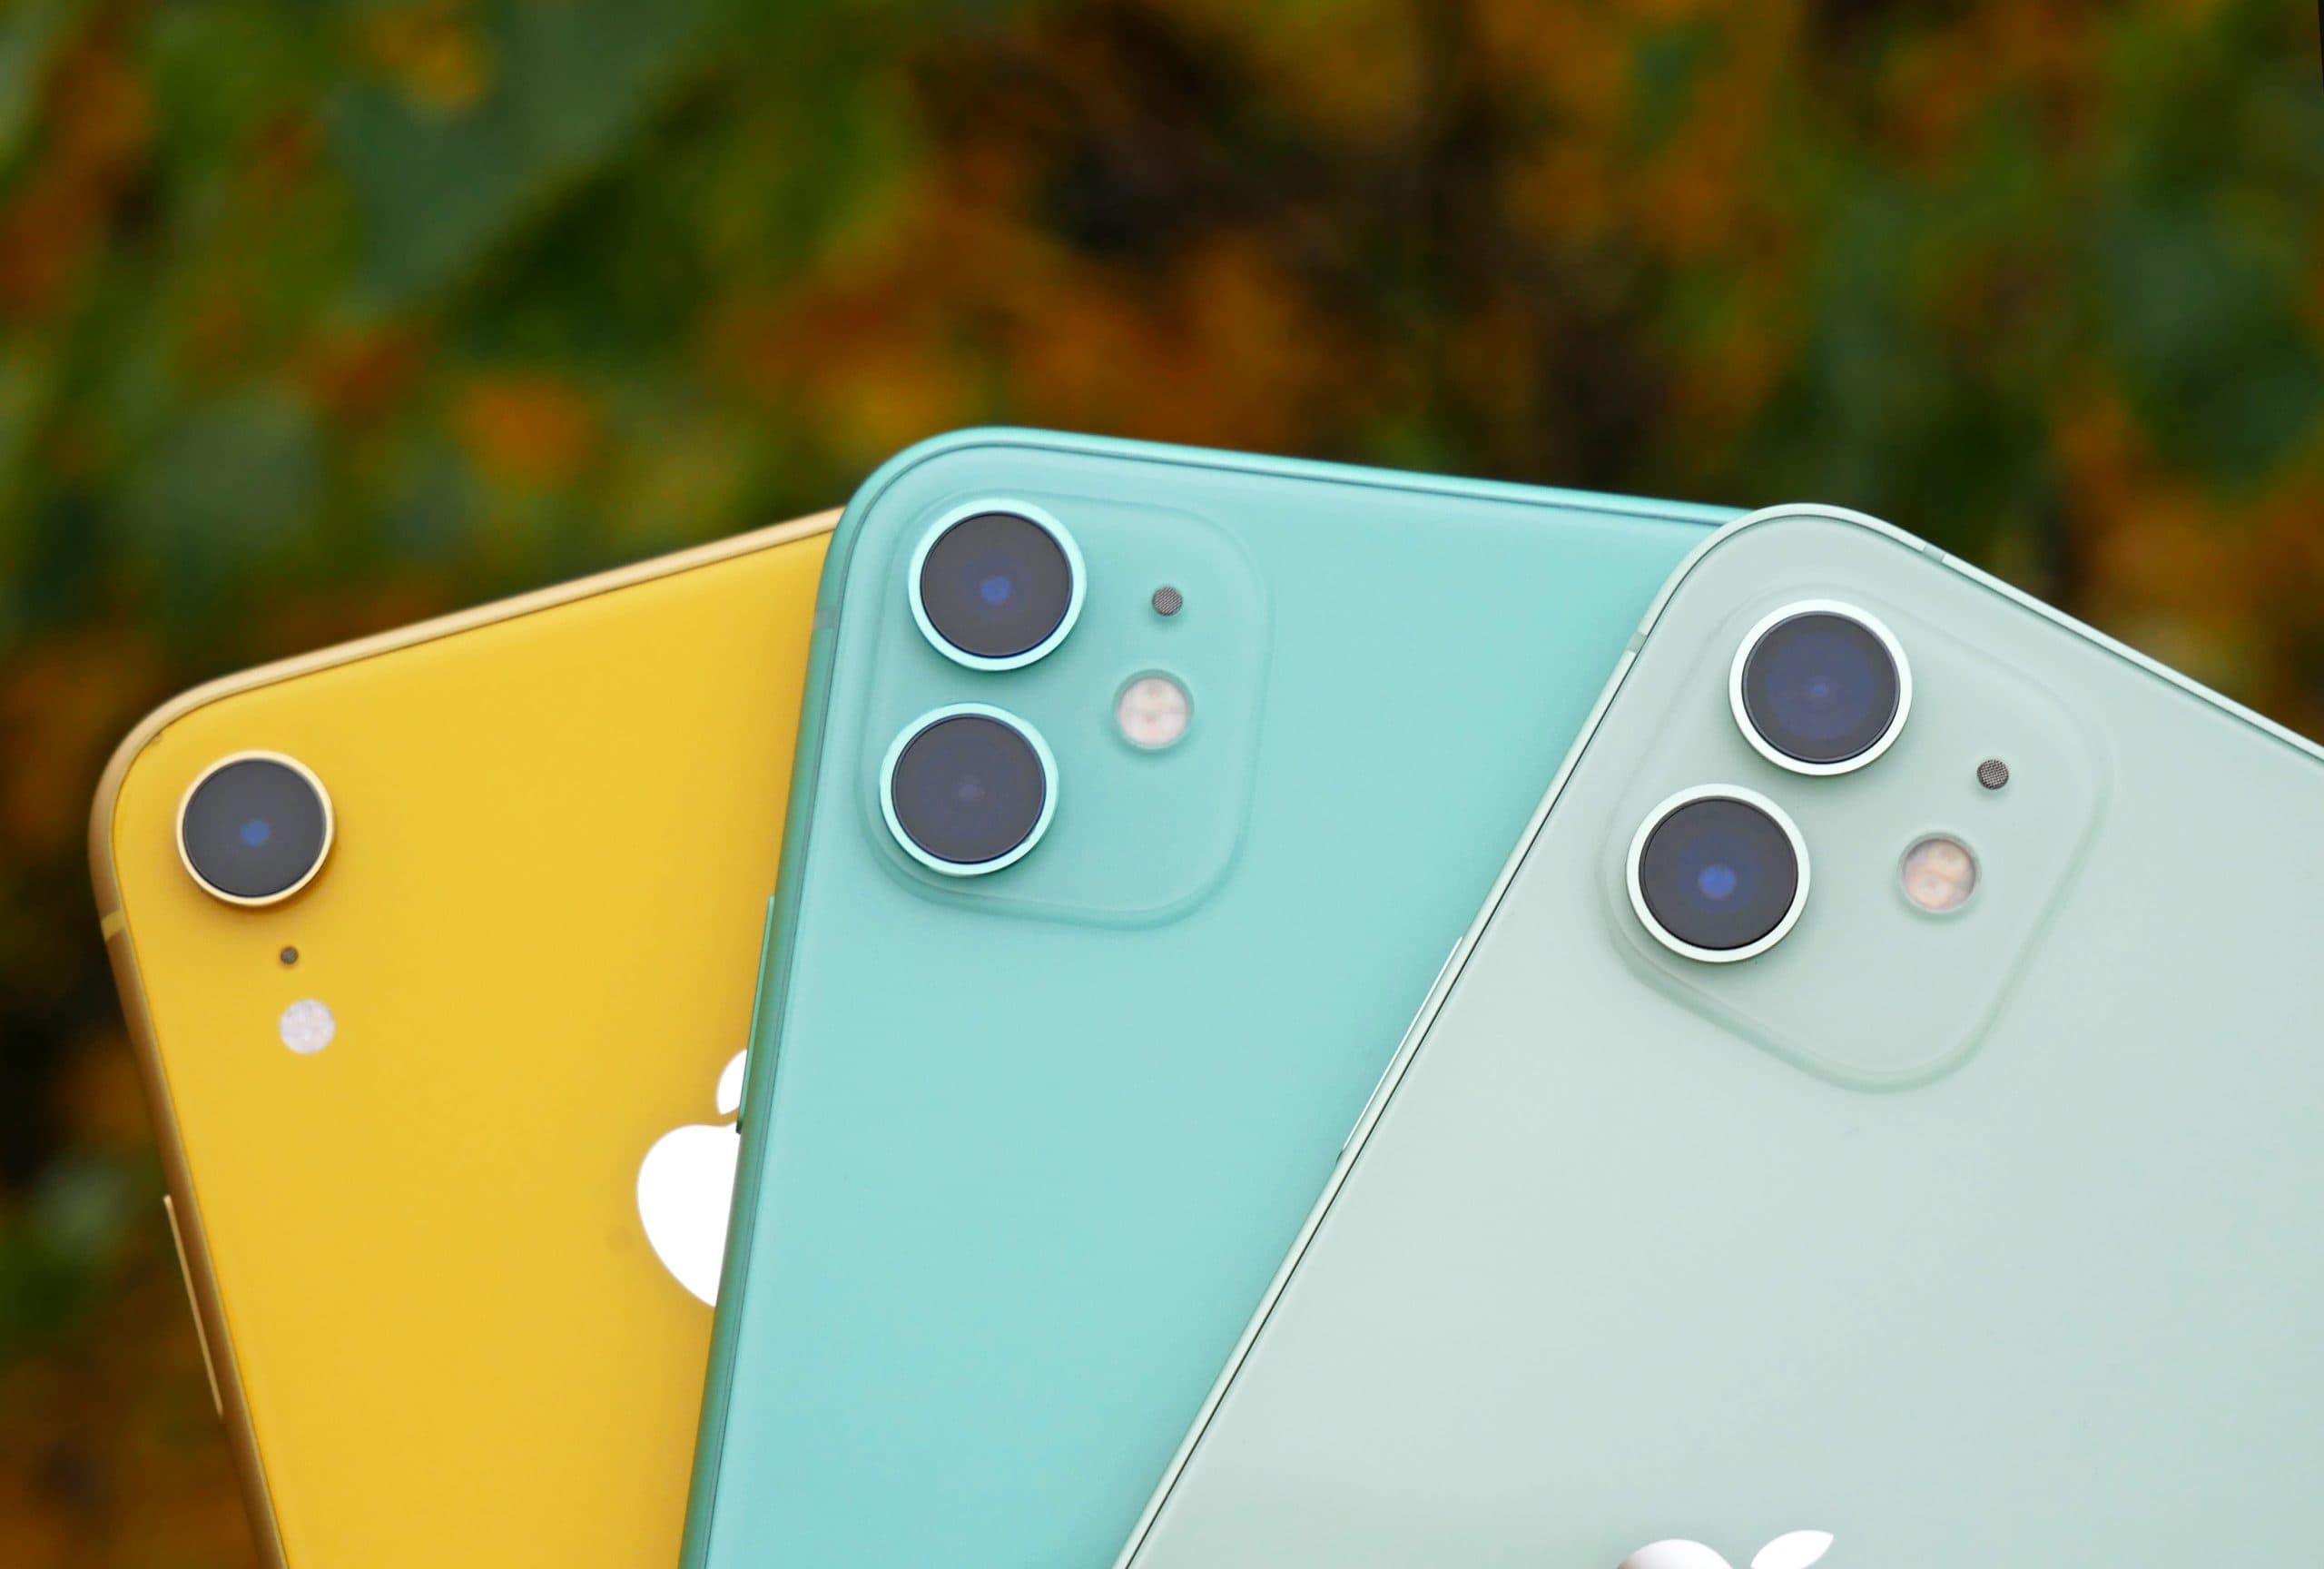 Обзоры — Сравнение камер iPhone 12, 11 и XR — стоит ли платить больше?